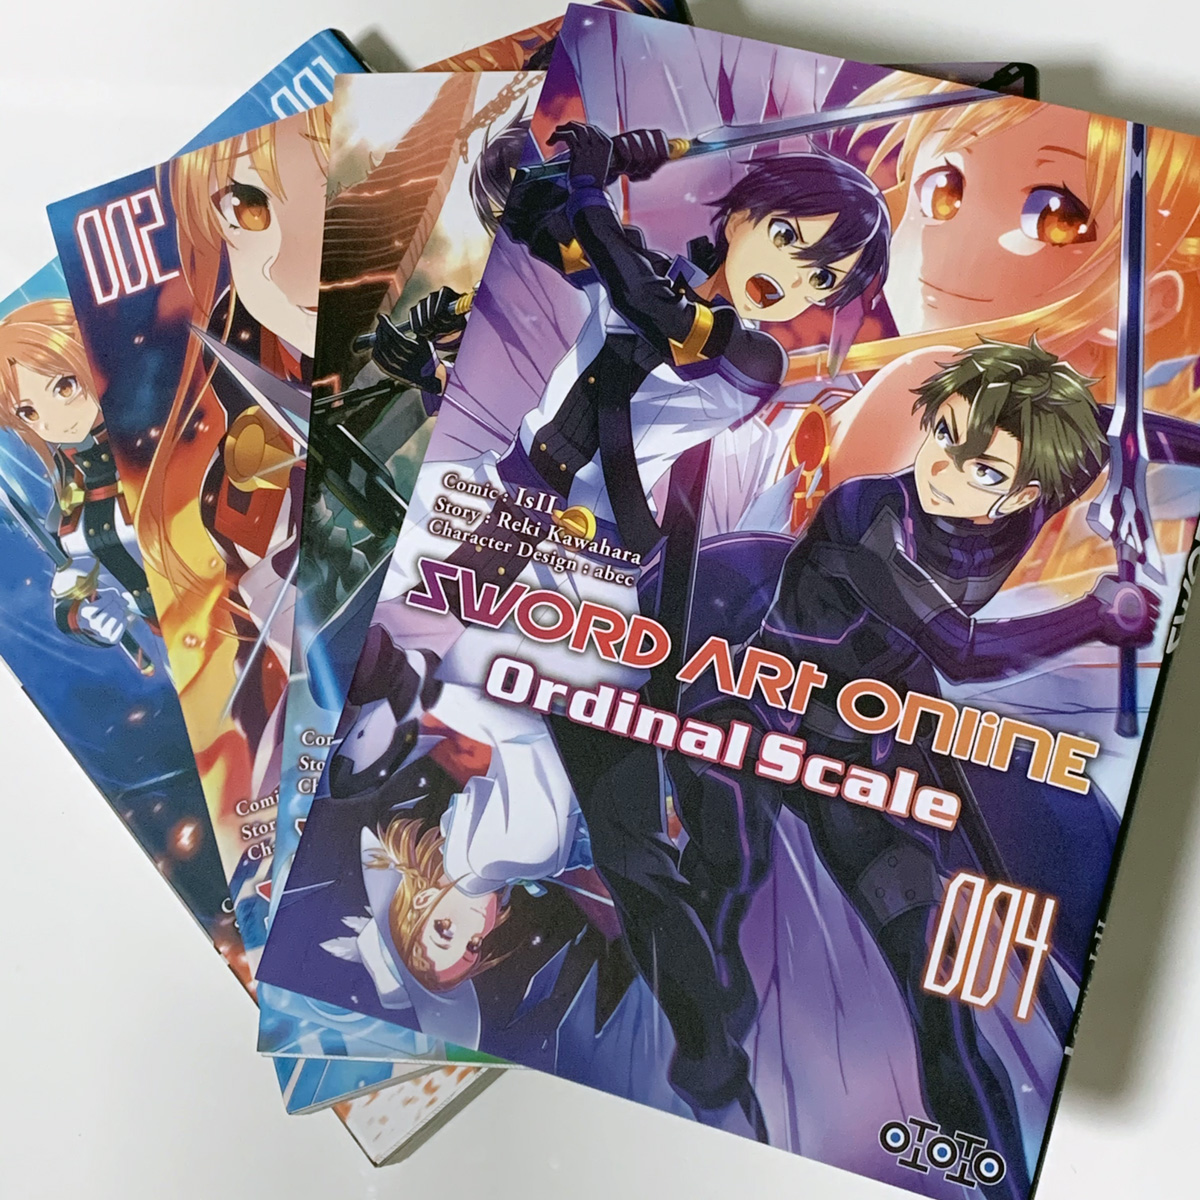 『#劇場版SAO』フランス語版第4巻の見本誌をいただきました。つや消し仕様の表紙がカッコいい! #sao #sao_anime 